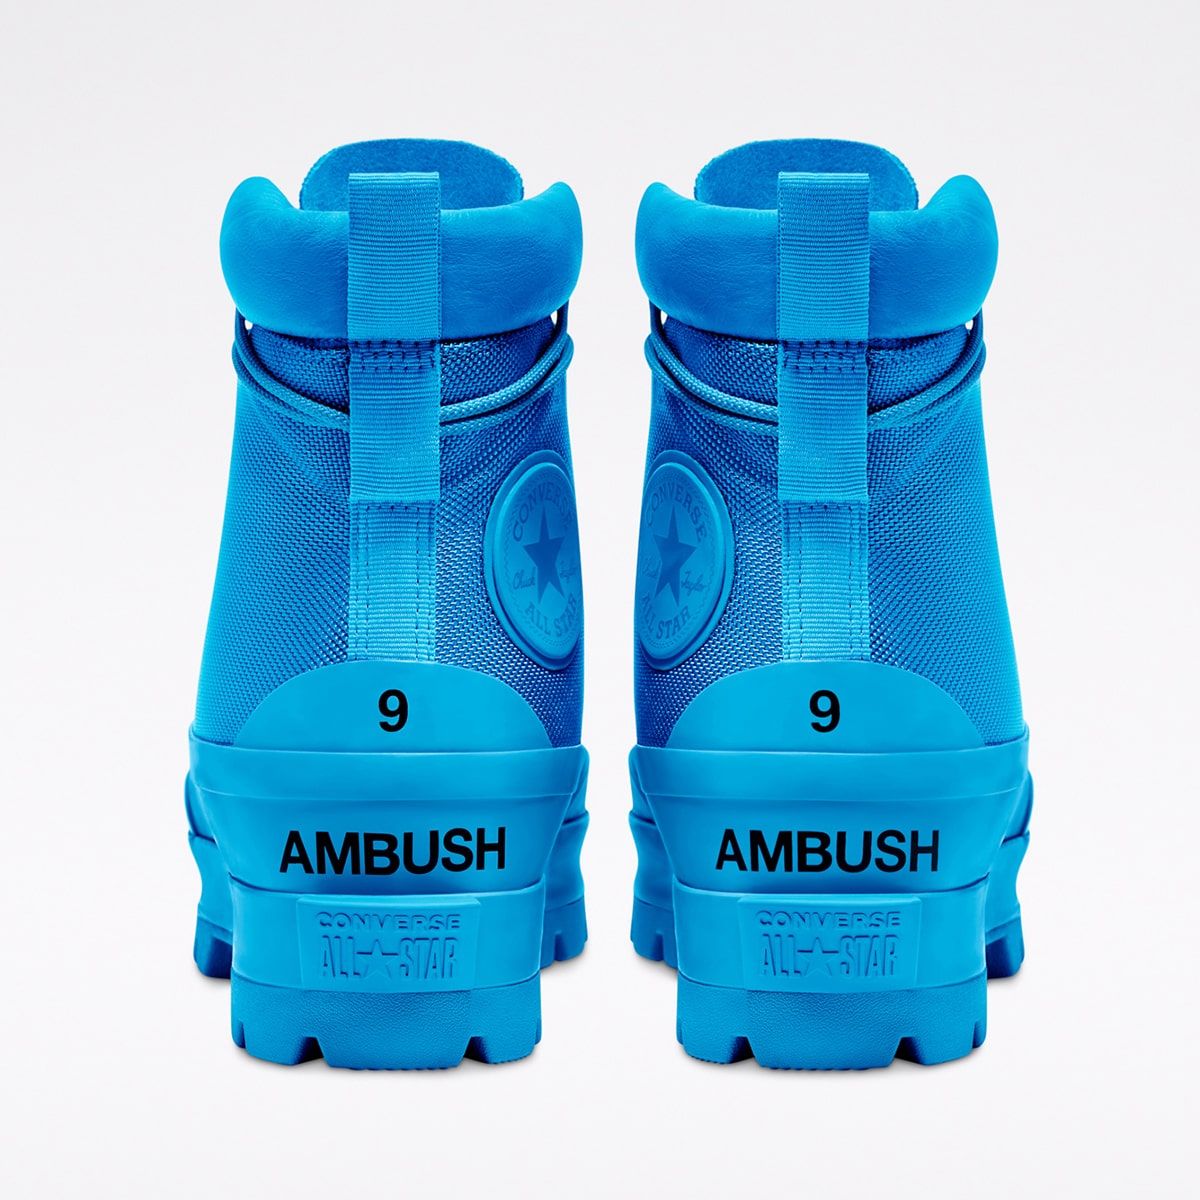 Converse x AMBUSH Collection Arrives November 24 | UhfmrShops | Sneaker  Converse ERX 260 Archive Alive 165043C